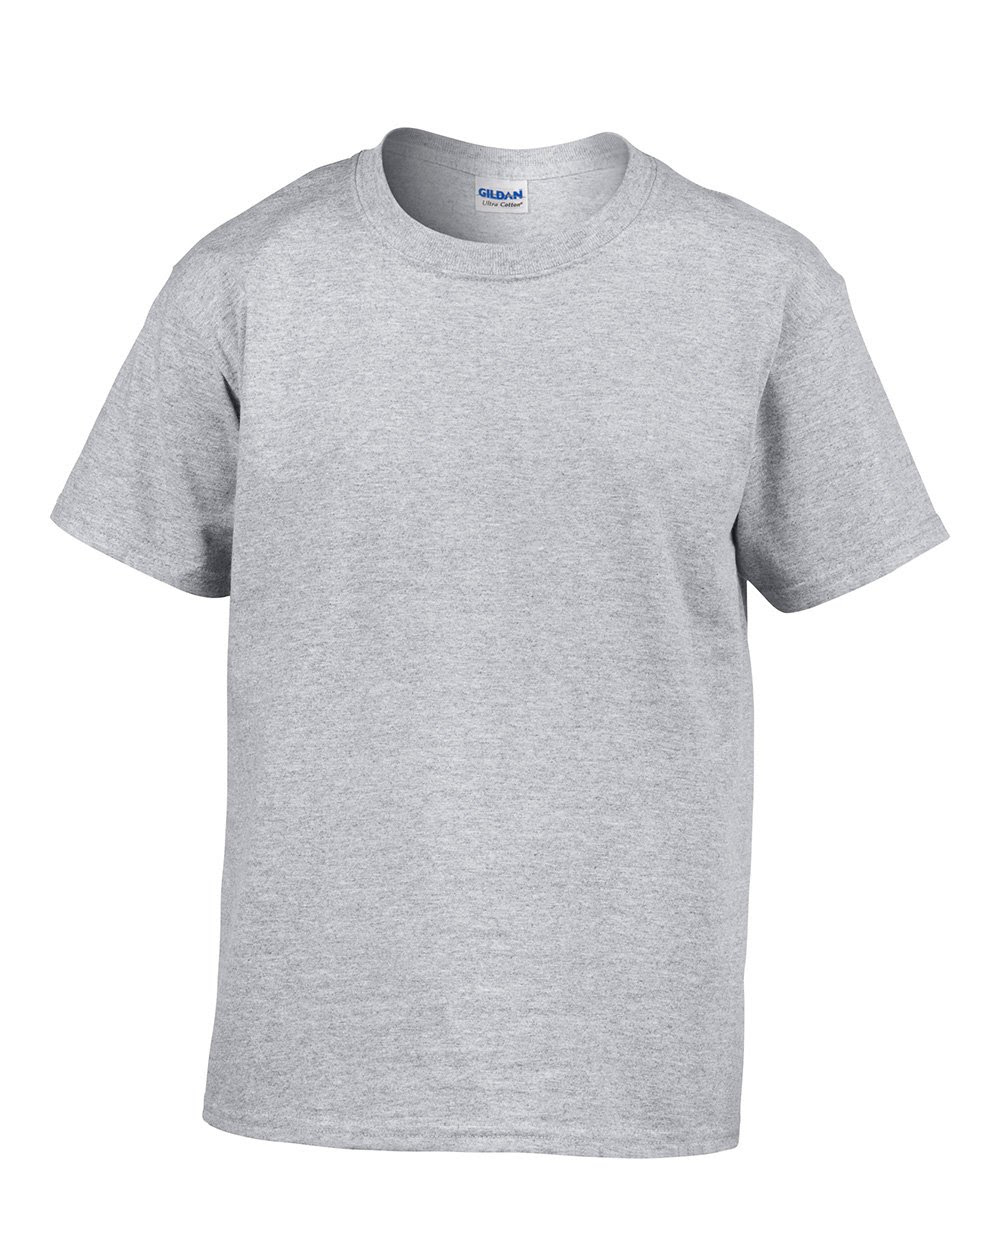 Gildan T Shirt Template